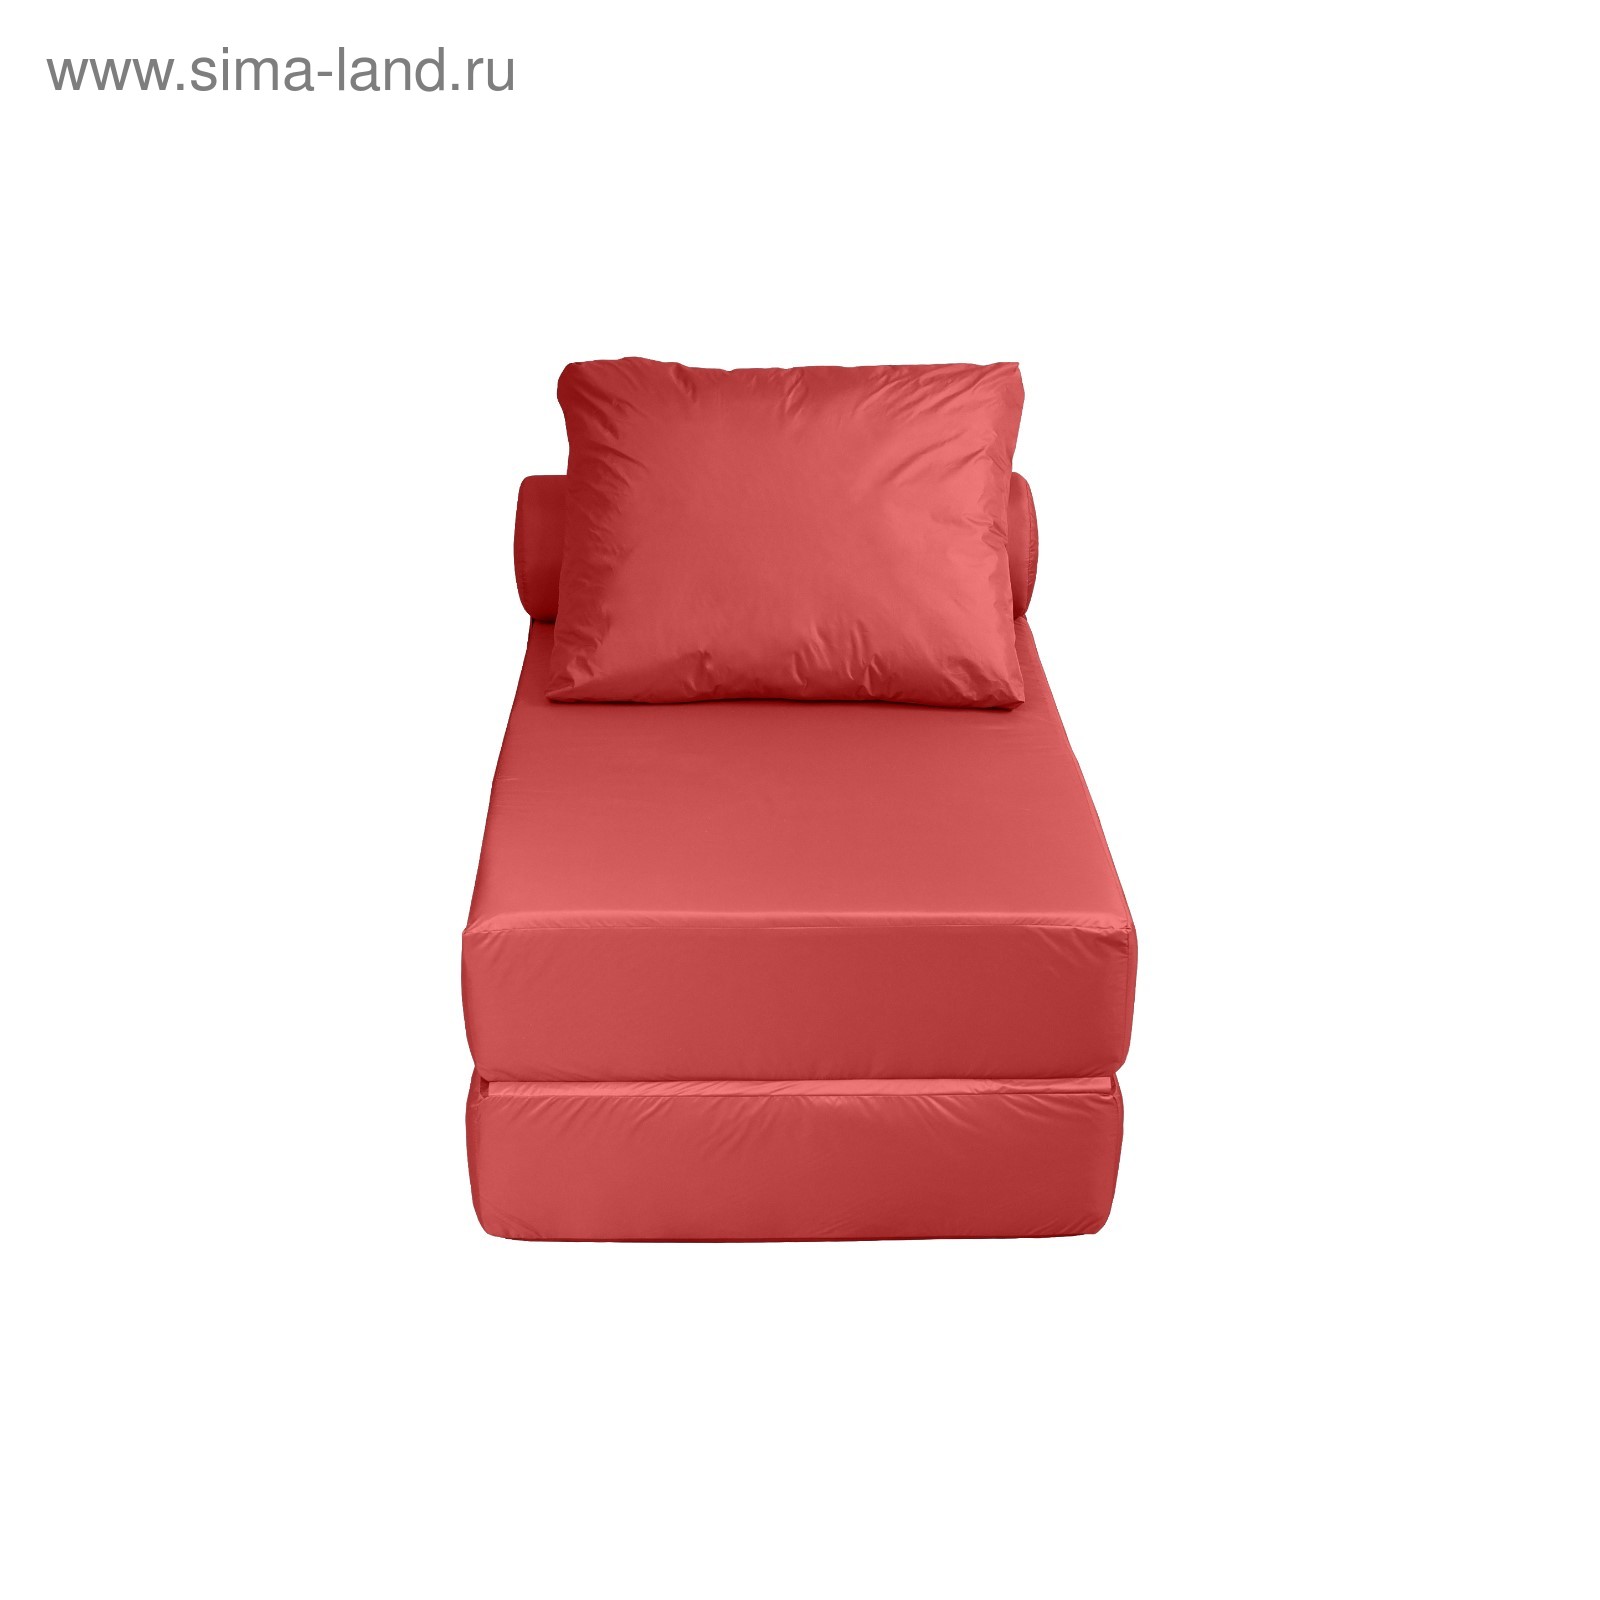 Кресло кровать бордо